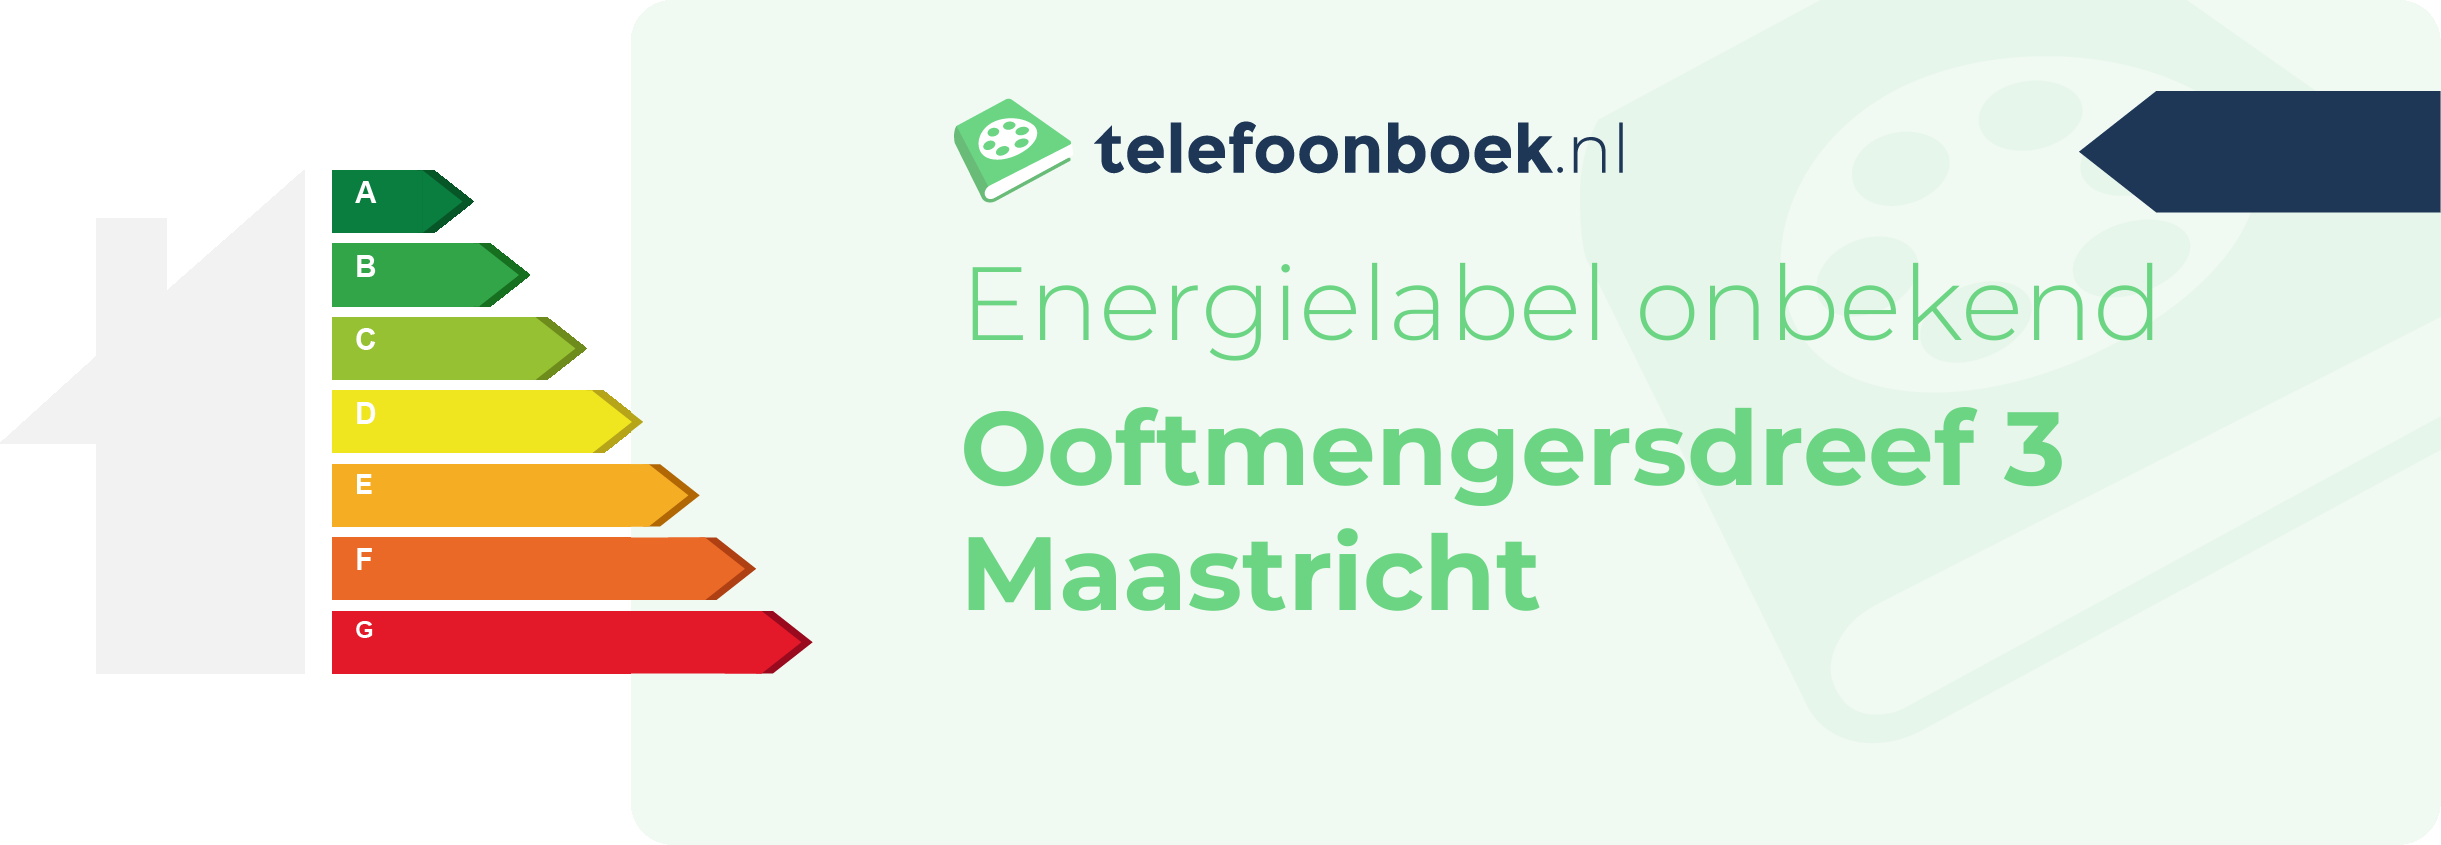 Energielabel Ooftmengersdreef 3 Maastricht